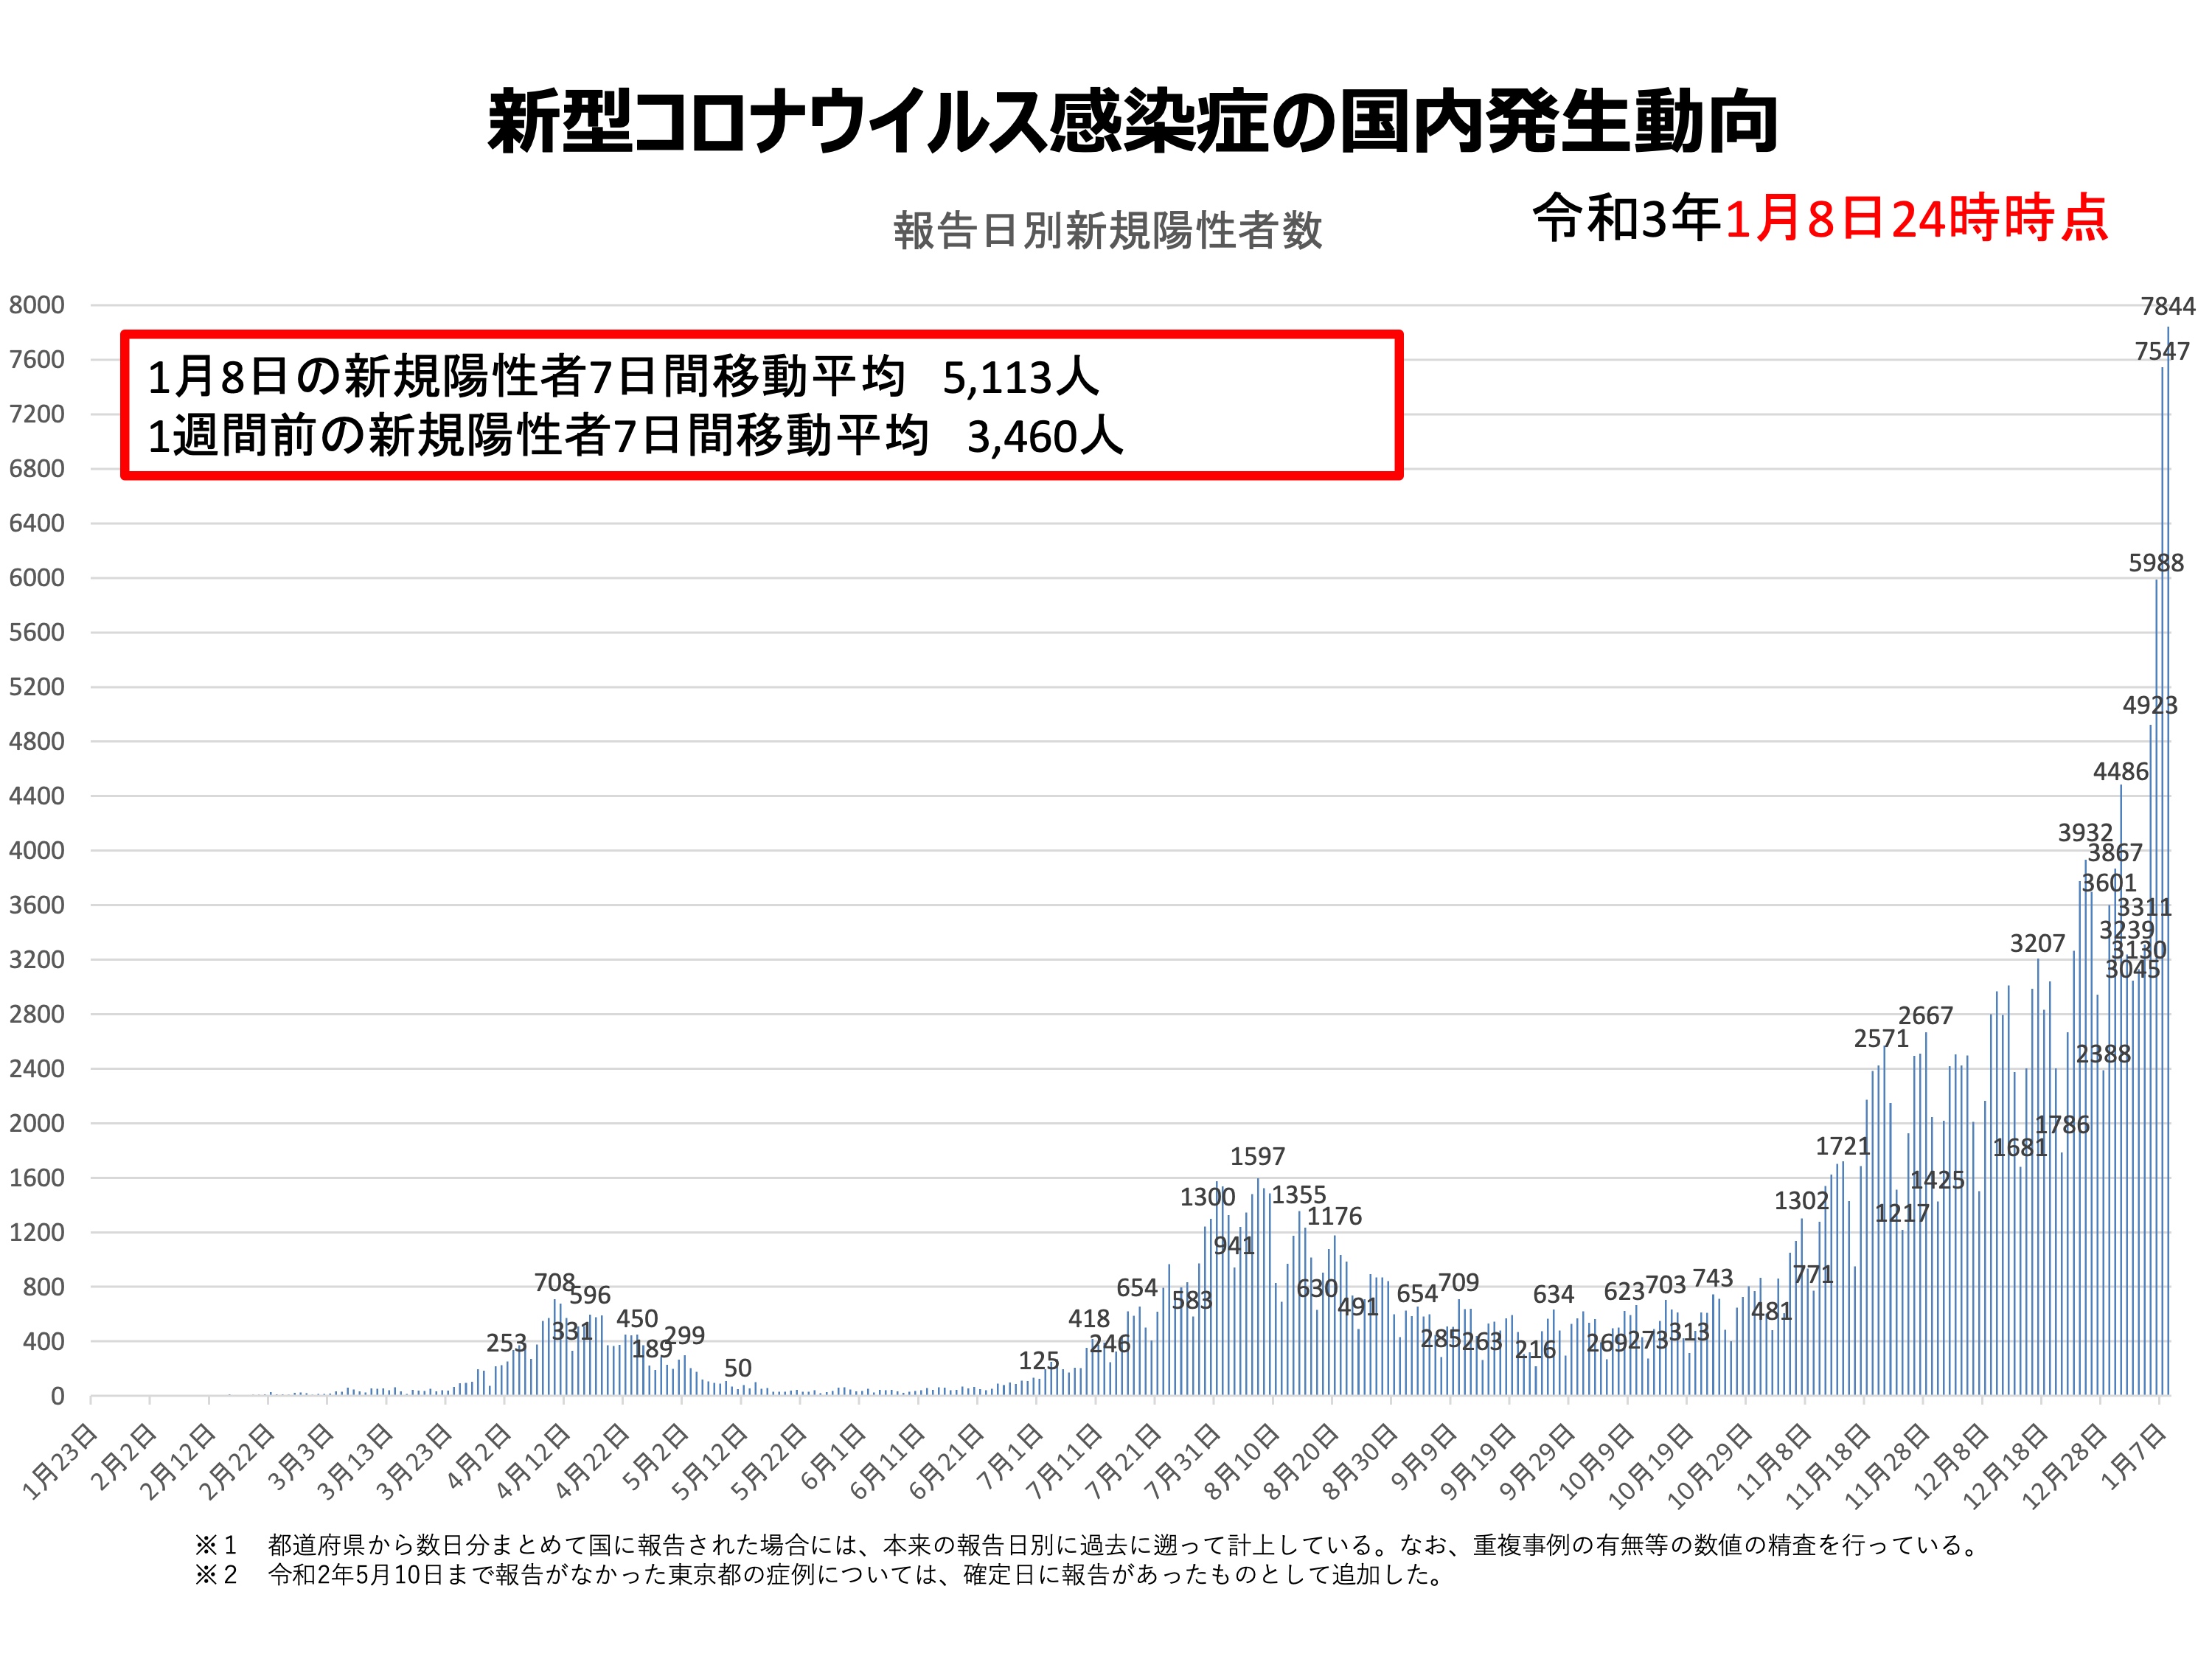 Deutlicher Anstieg: Die täg­li­chen Covid-19-Fäl­le in Japan.